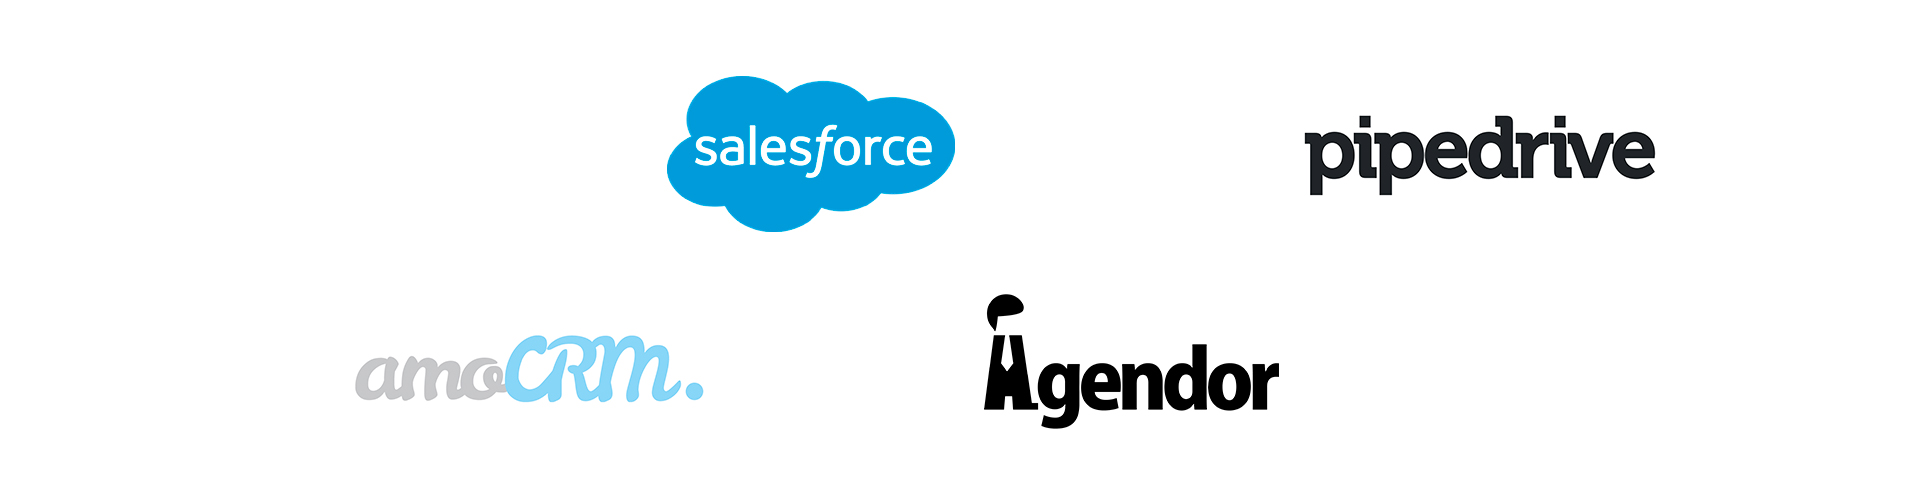 Logotippo salesforce, pipedrive, amocrm e agendor.